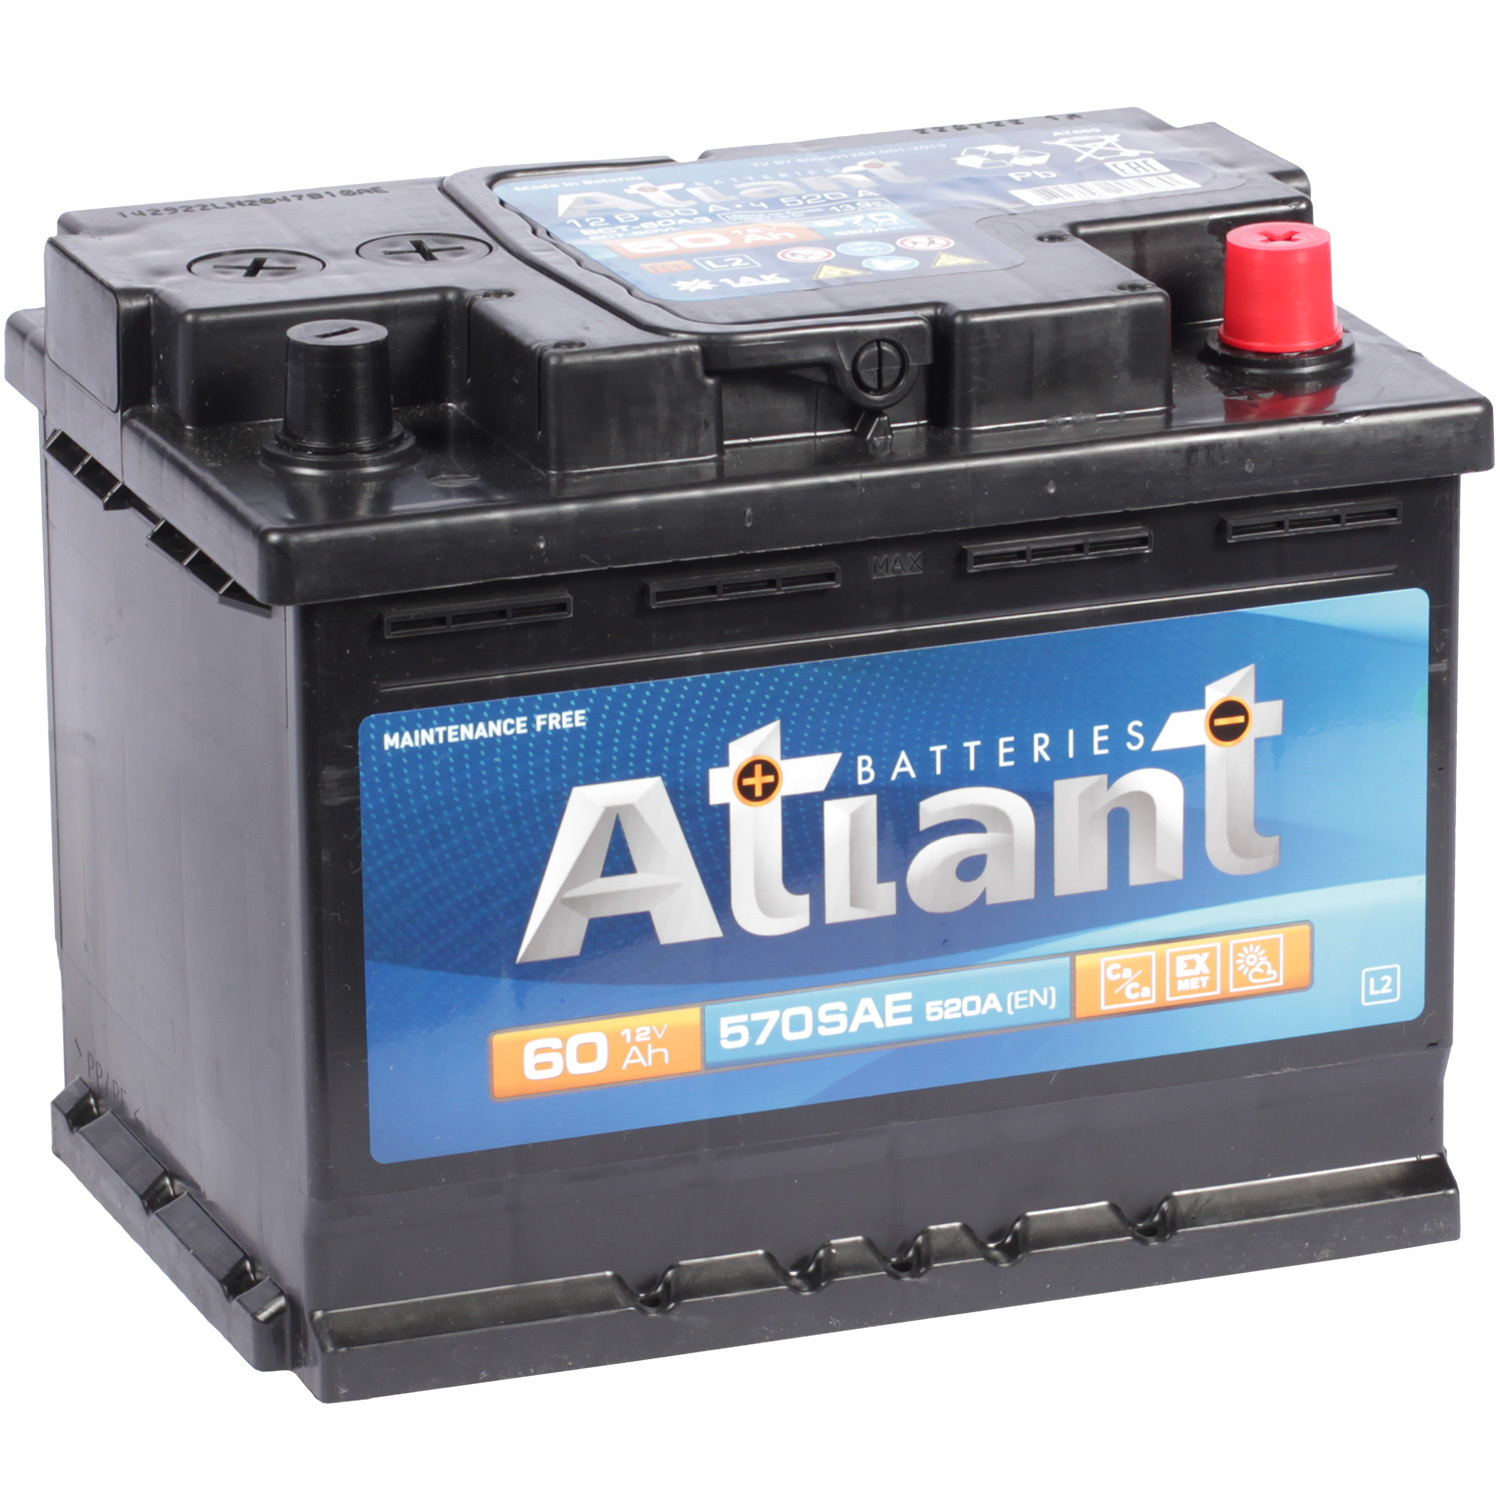 Atlant Автомобильный аккумулятор Atlant 60 Ач обратная полярность L2 русбат автомобильный аккумулятор русбат 60 ач обратная полярность l2